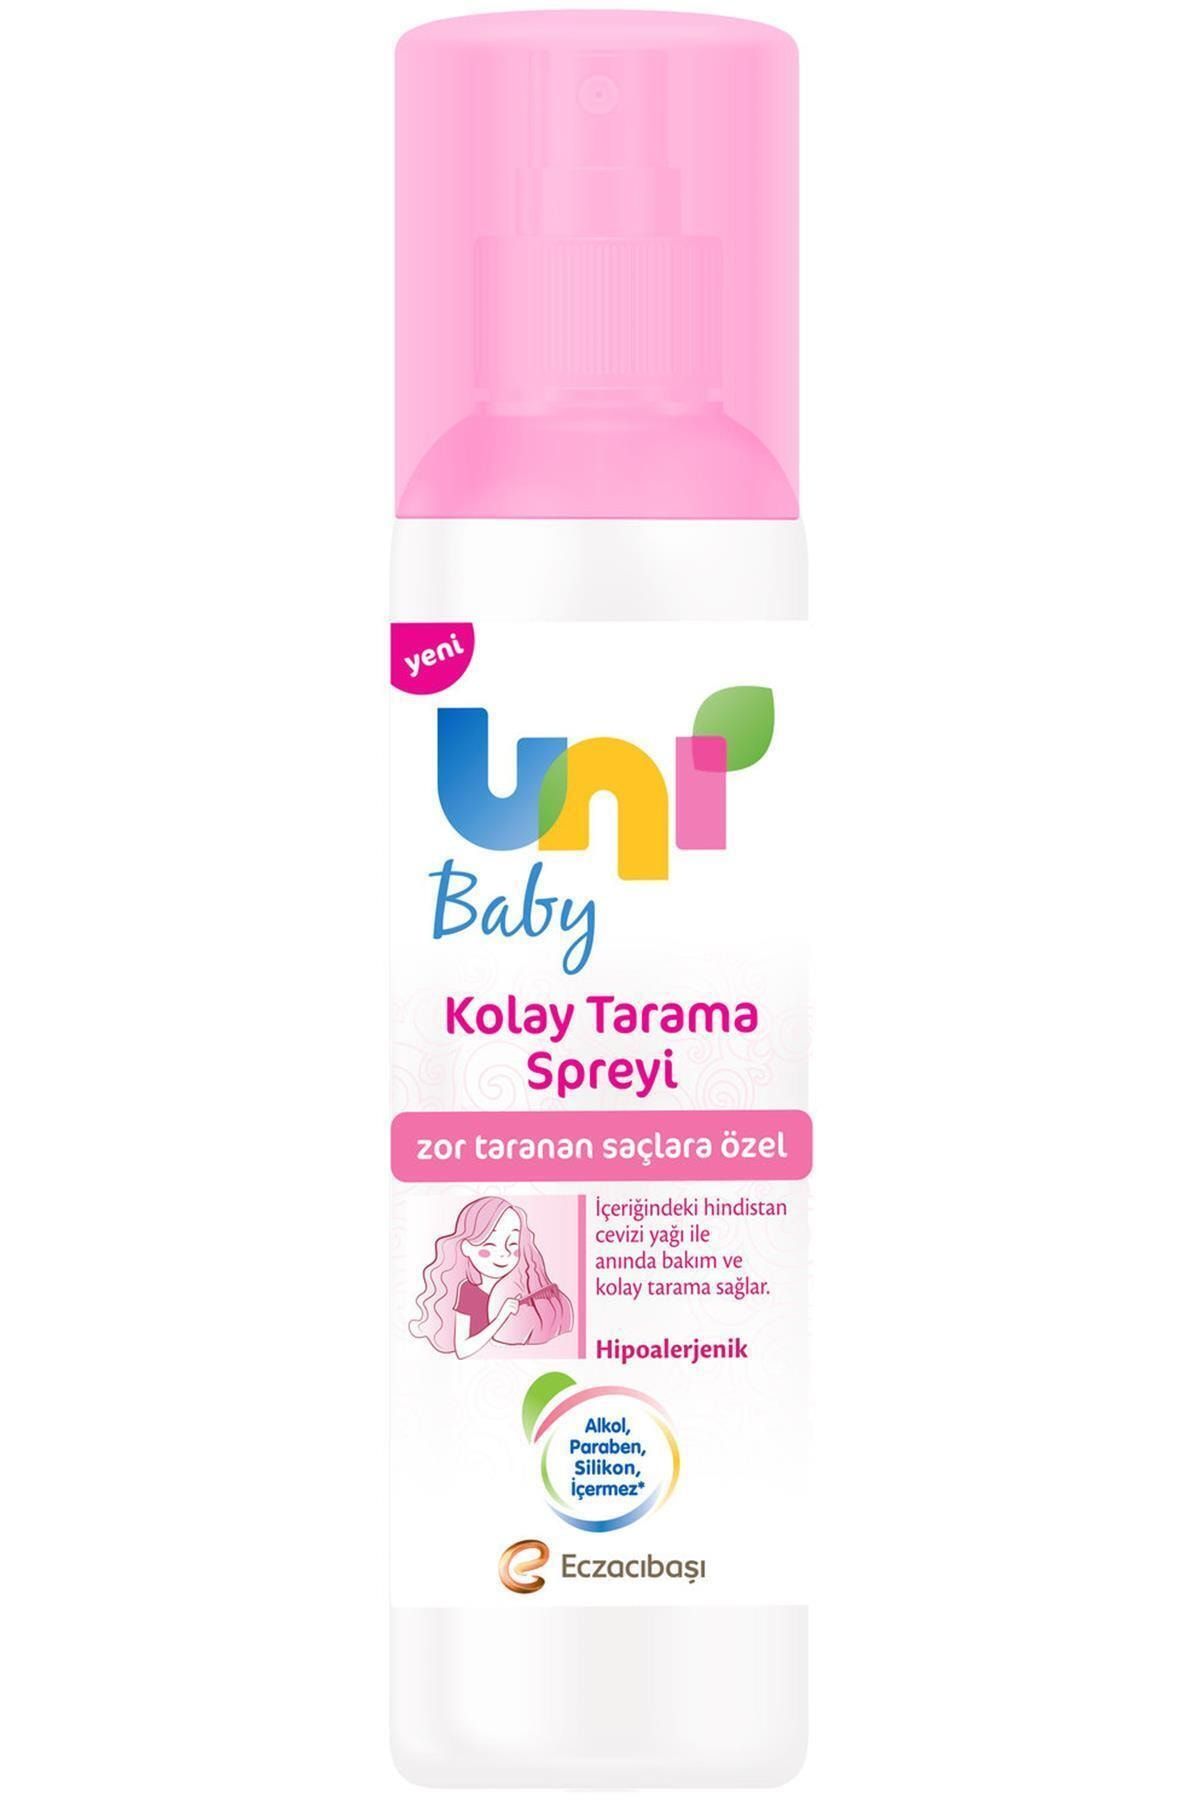 Uni Baby Marka: Kolay Tarama Spreyi 200ml Kategori: Bebek Şampuanı